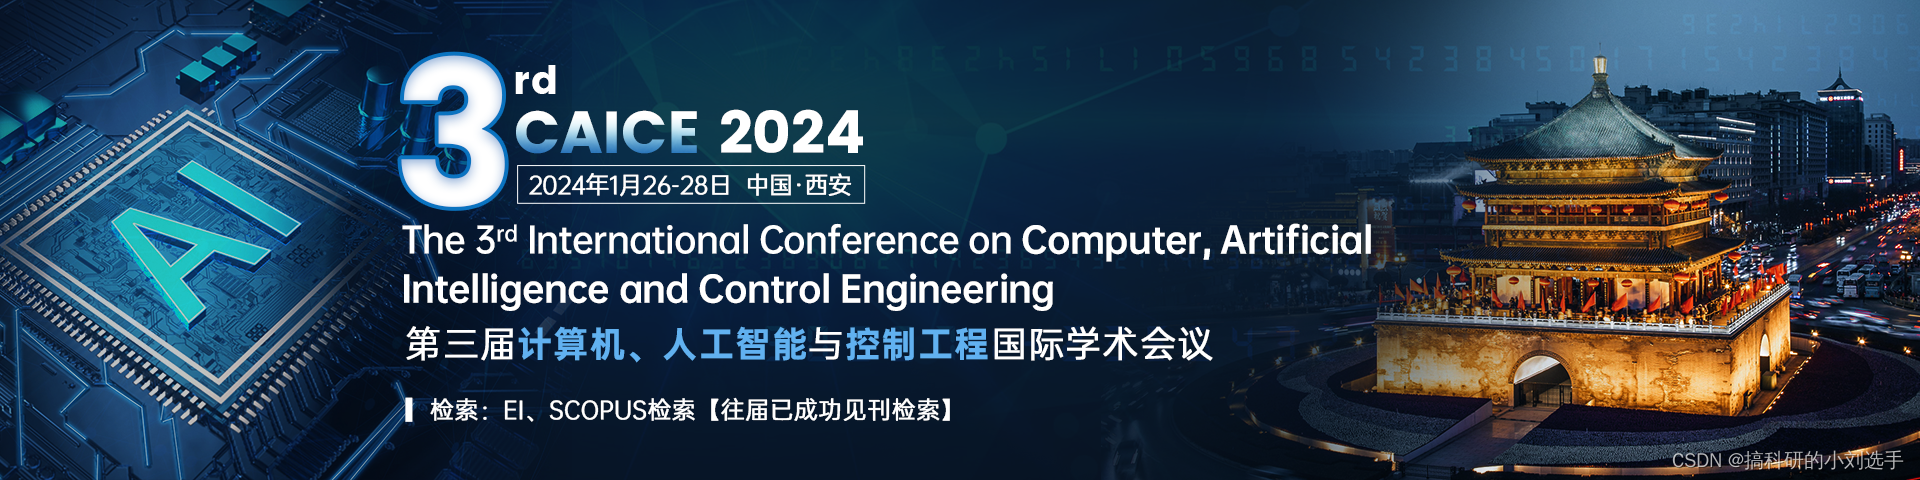 【EI会议征稿】第三届计算机、人工智能与控制工程国际学术会议